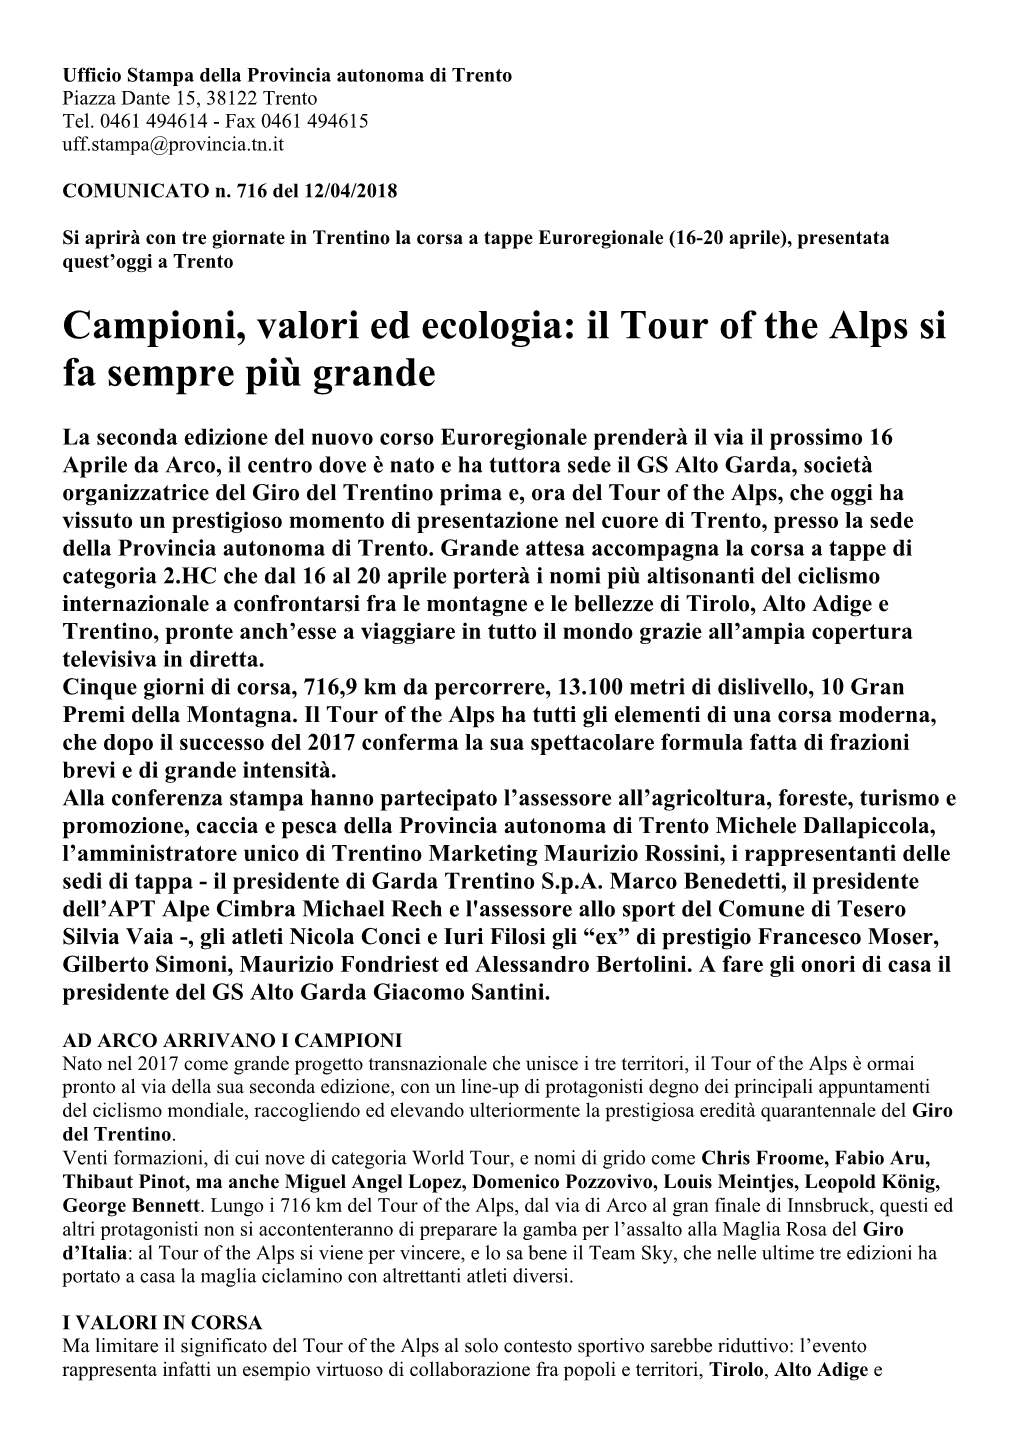 Campioni, Valori Ed Ecologia: Il Tour of the Alps Si Fa Sempre Più Grande